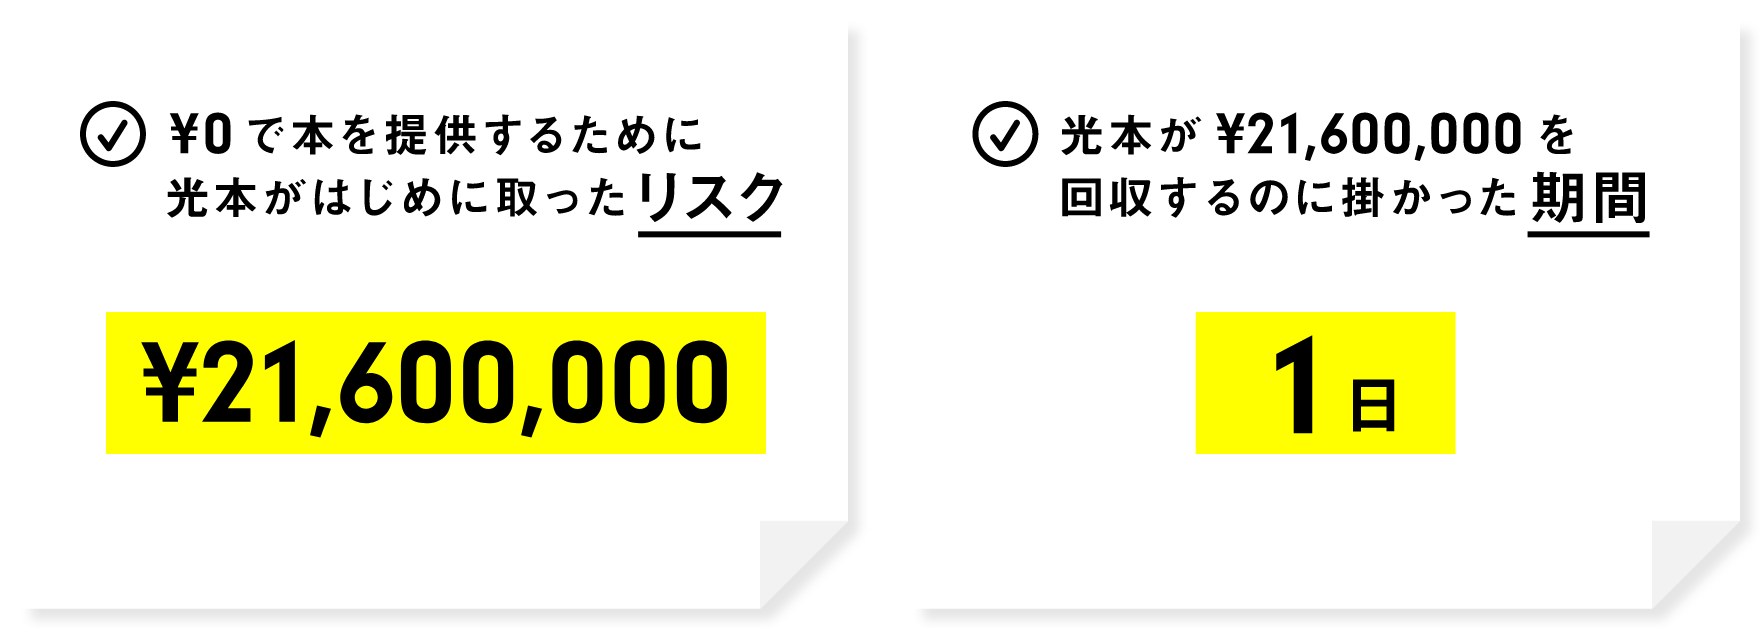 ¥0で本を提供するために光本がはじめに取ったリスク 光本が¥25,000,000を回収するのに掛かった期間